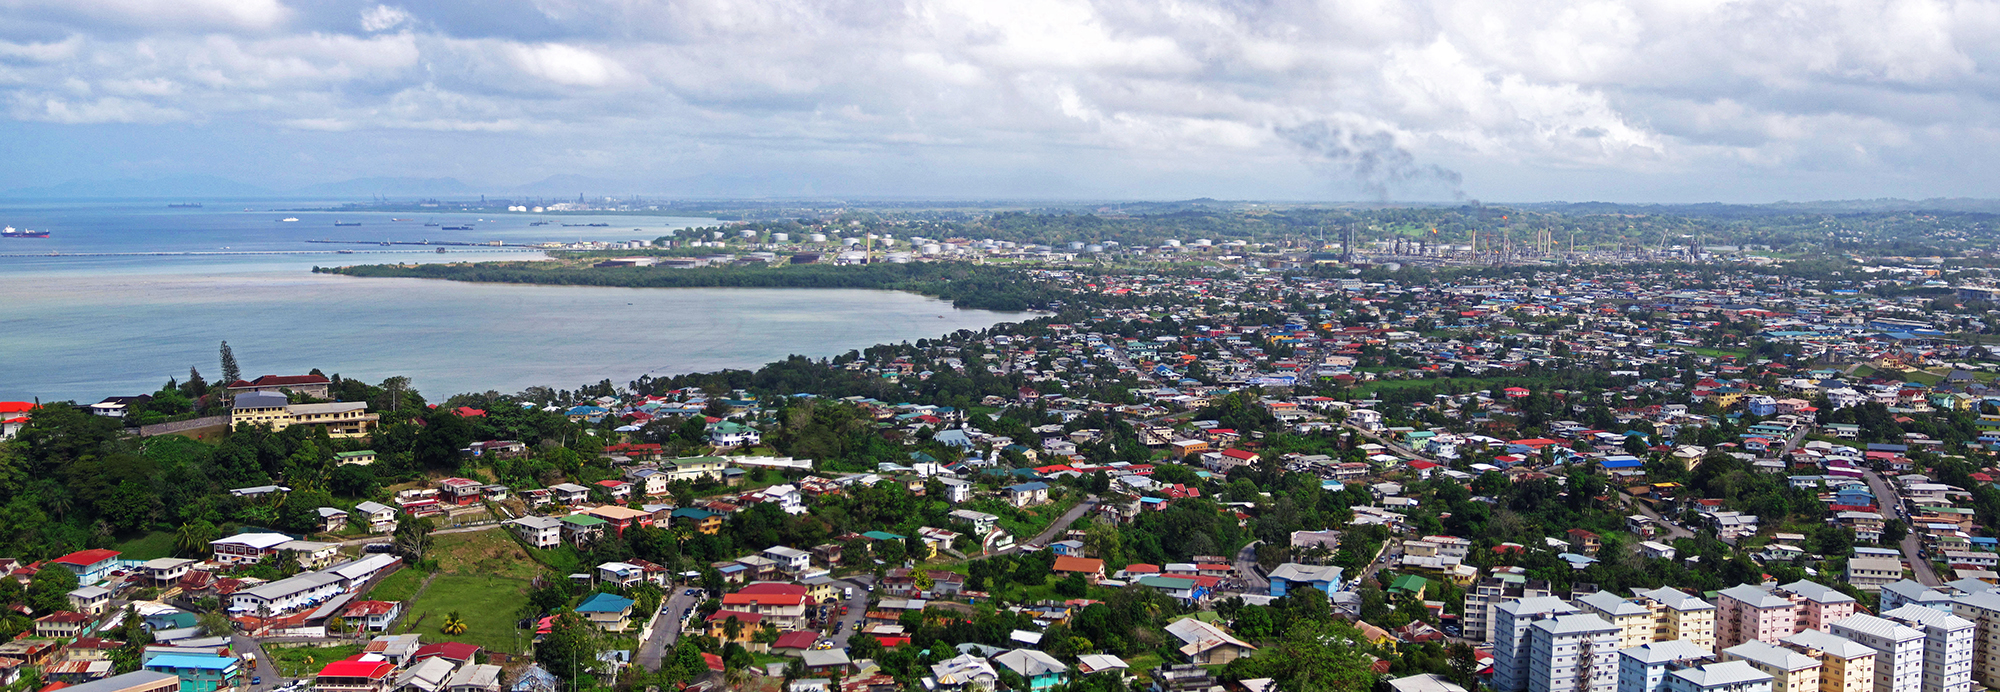 Photo of Trinidad coastline and industrial plant